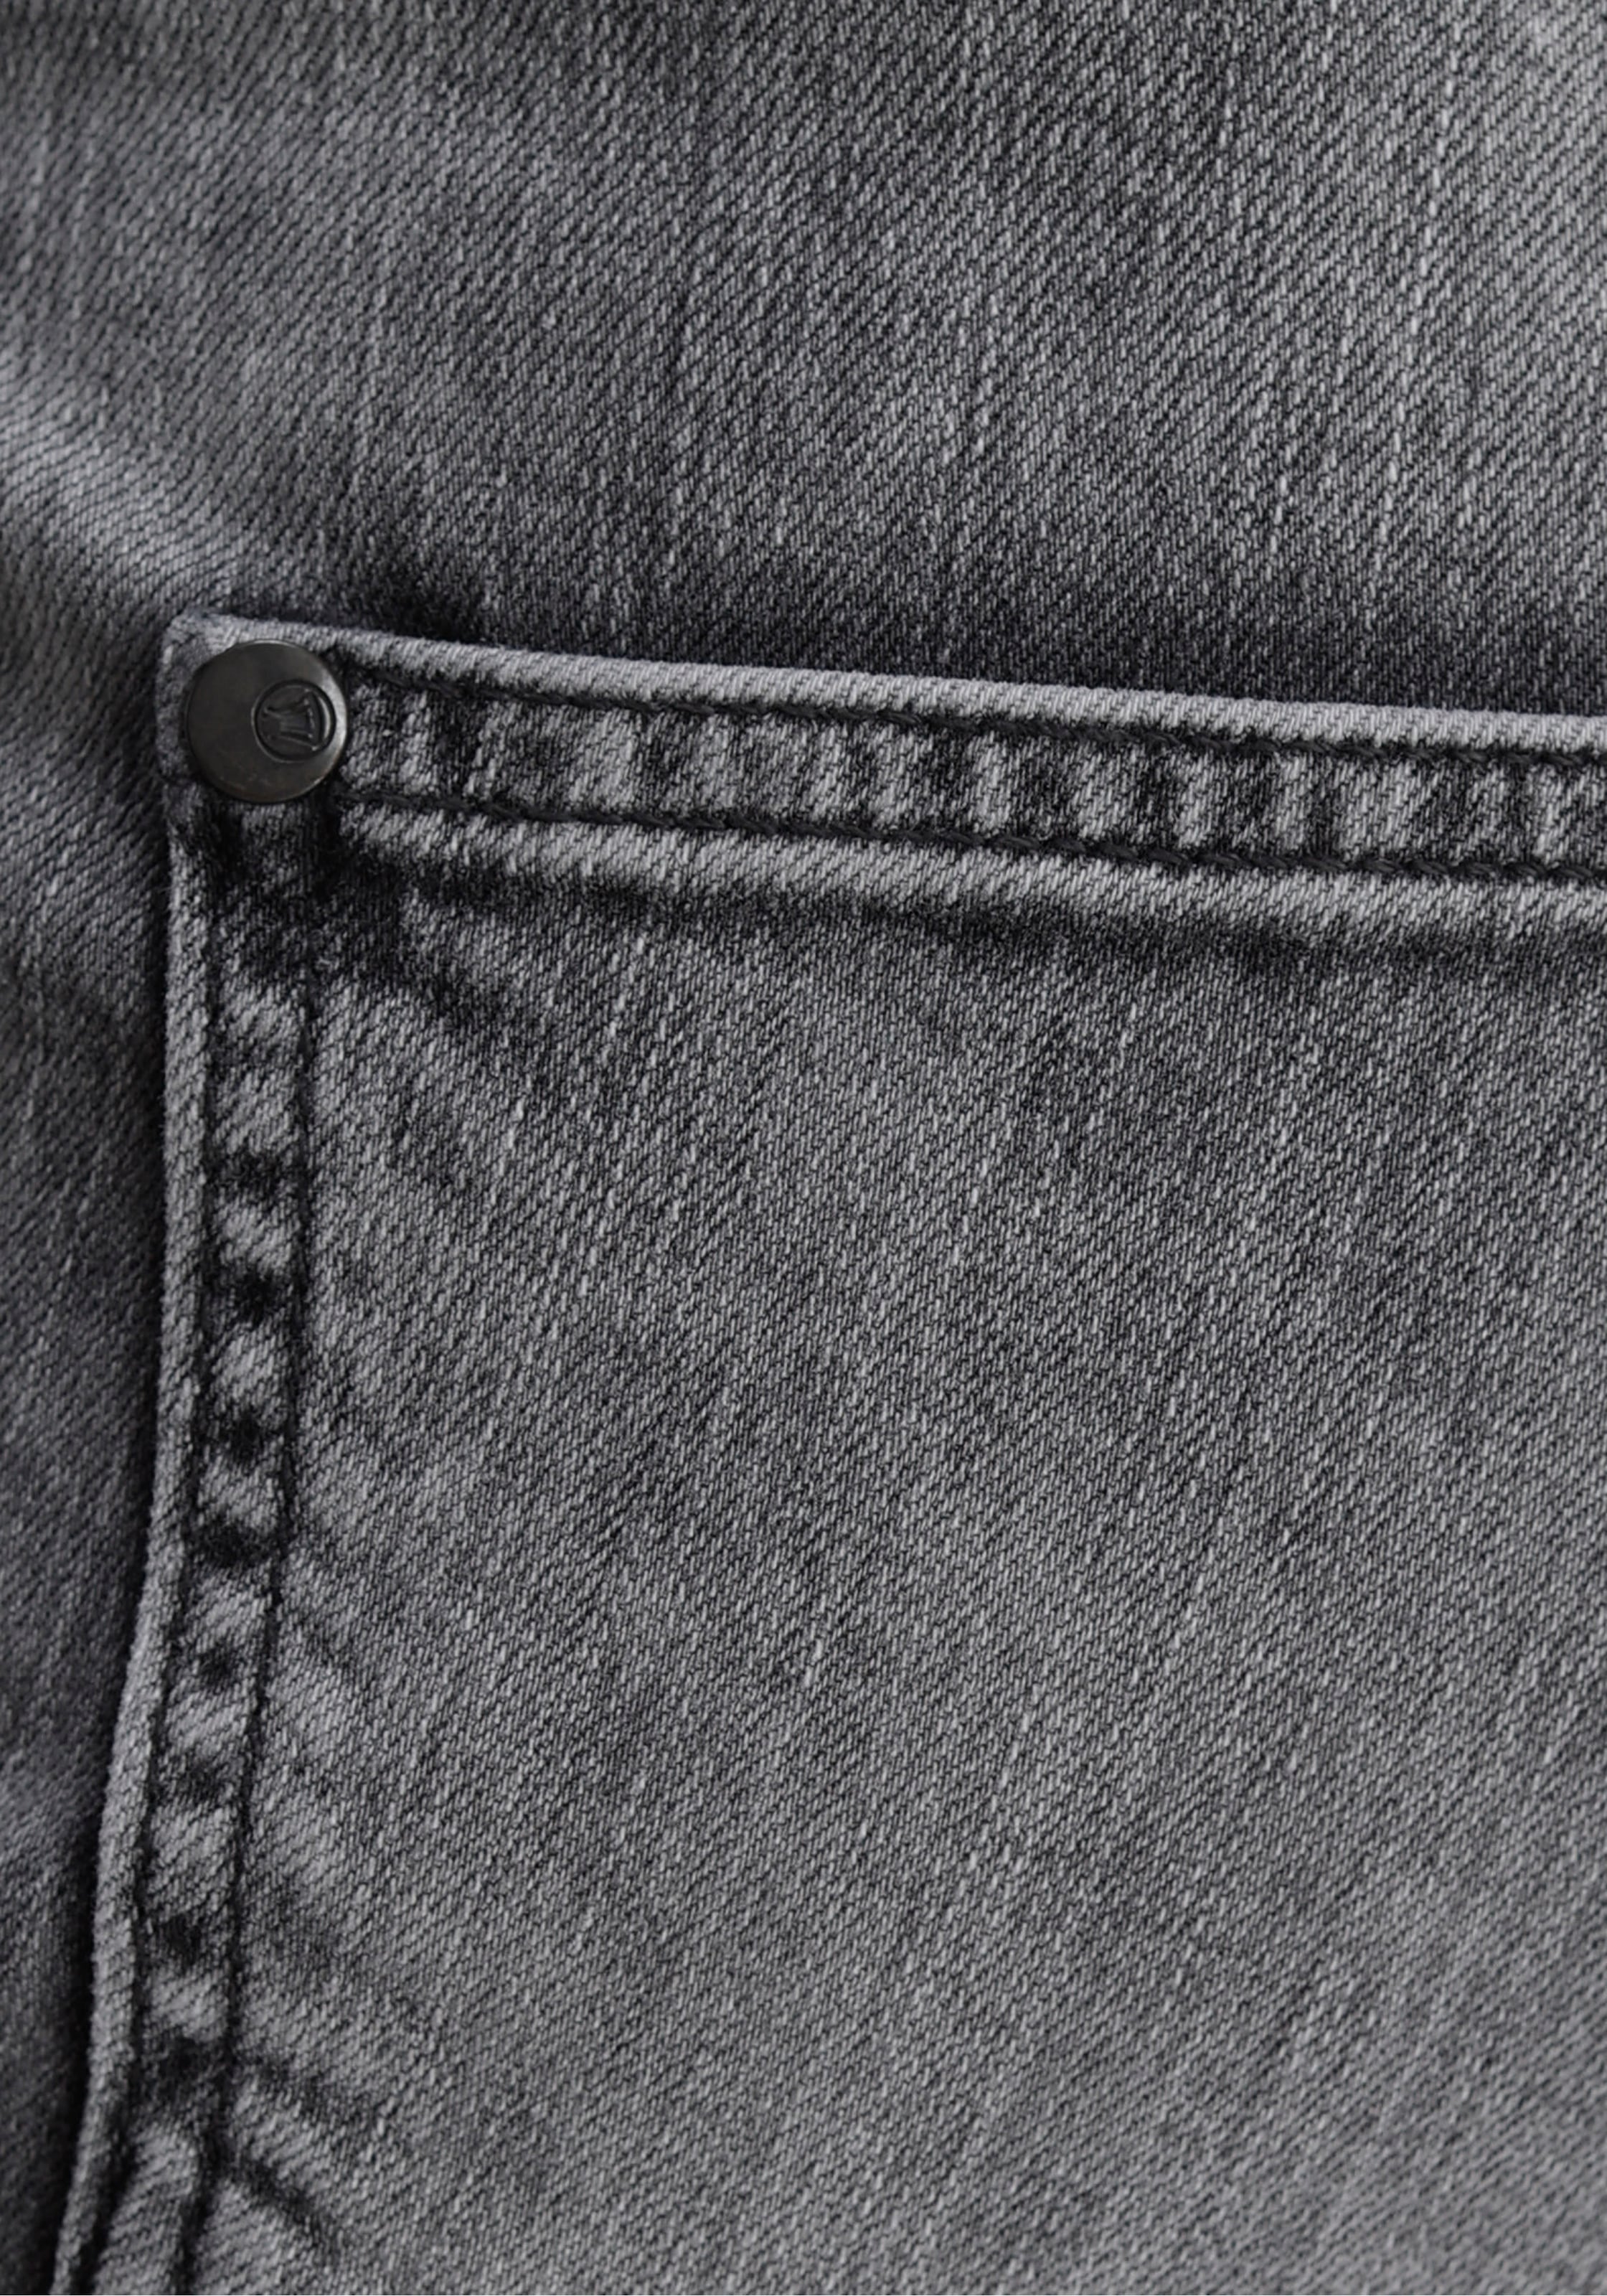 Herrlicher Slim-fit-Jeans »PEPPY SLIM POWERSTRETCH«, Normal Waist